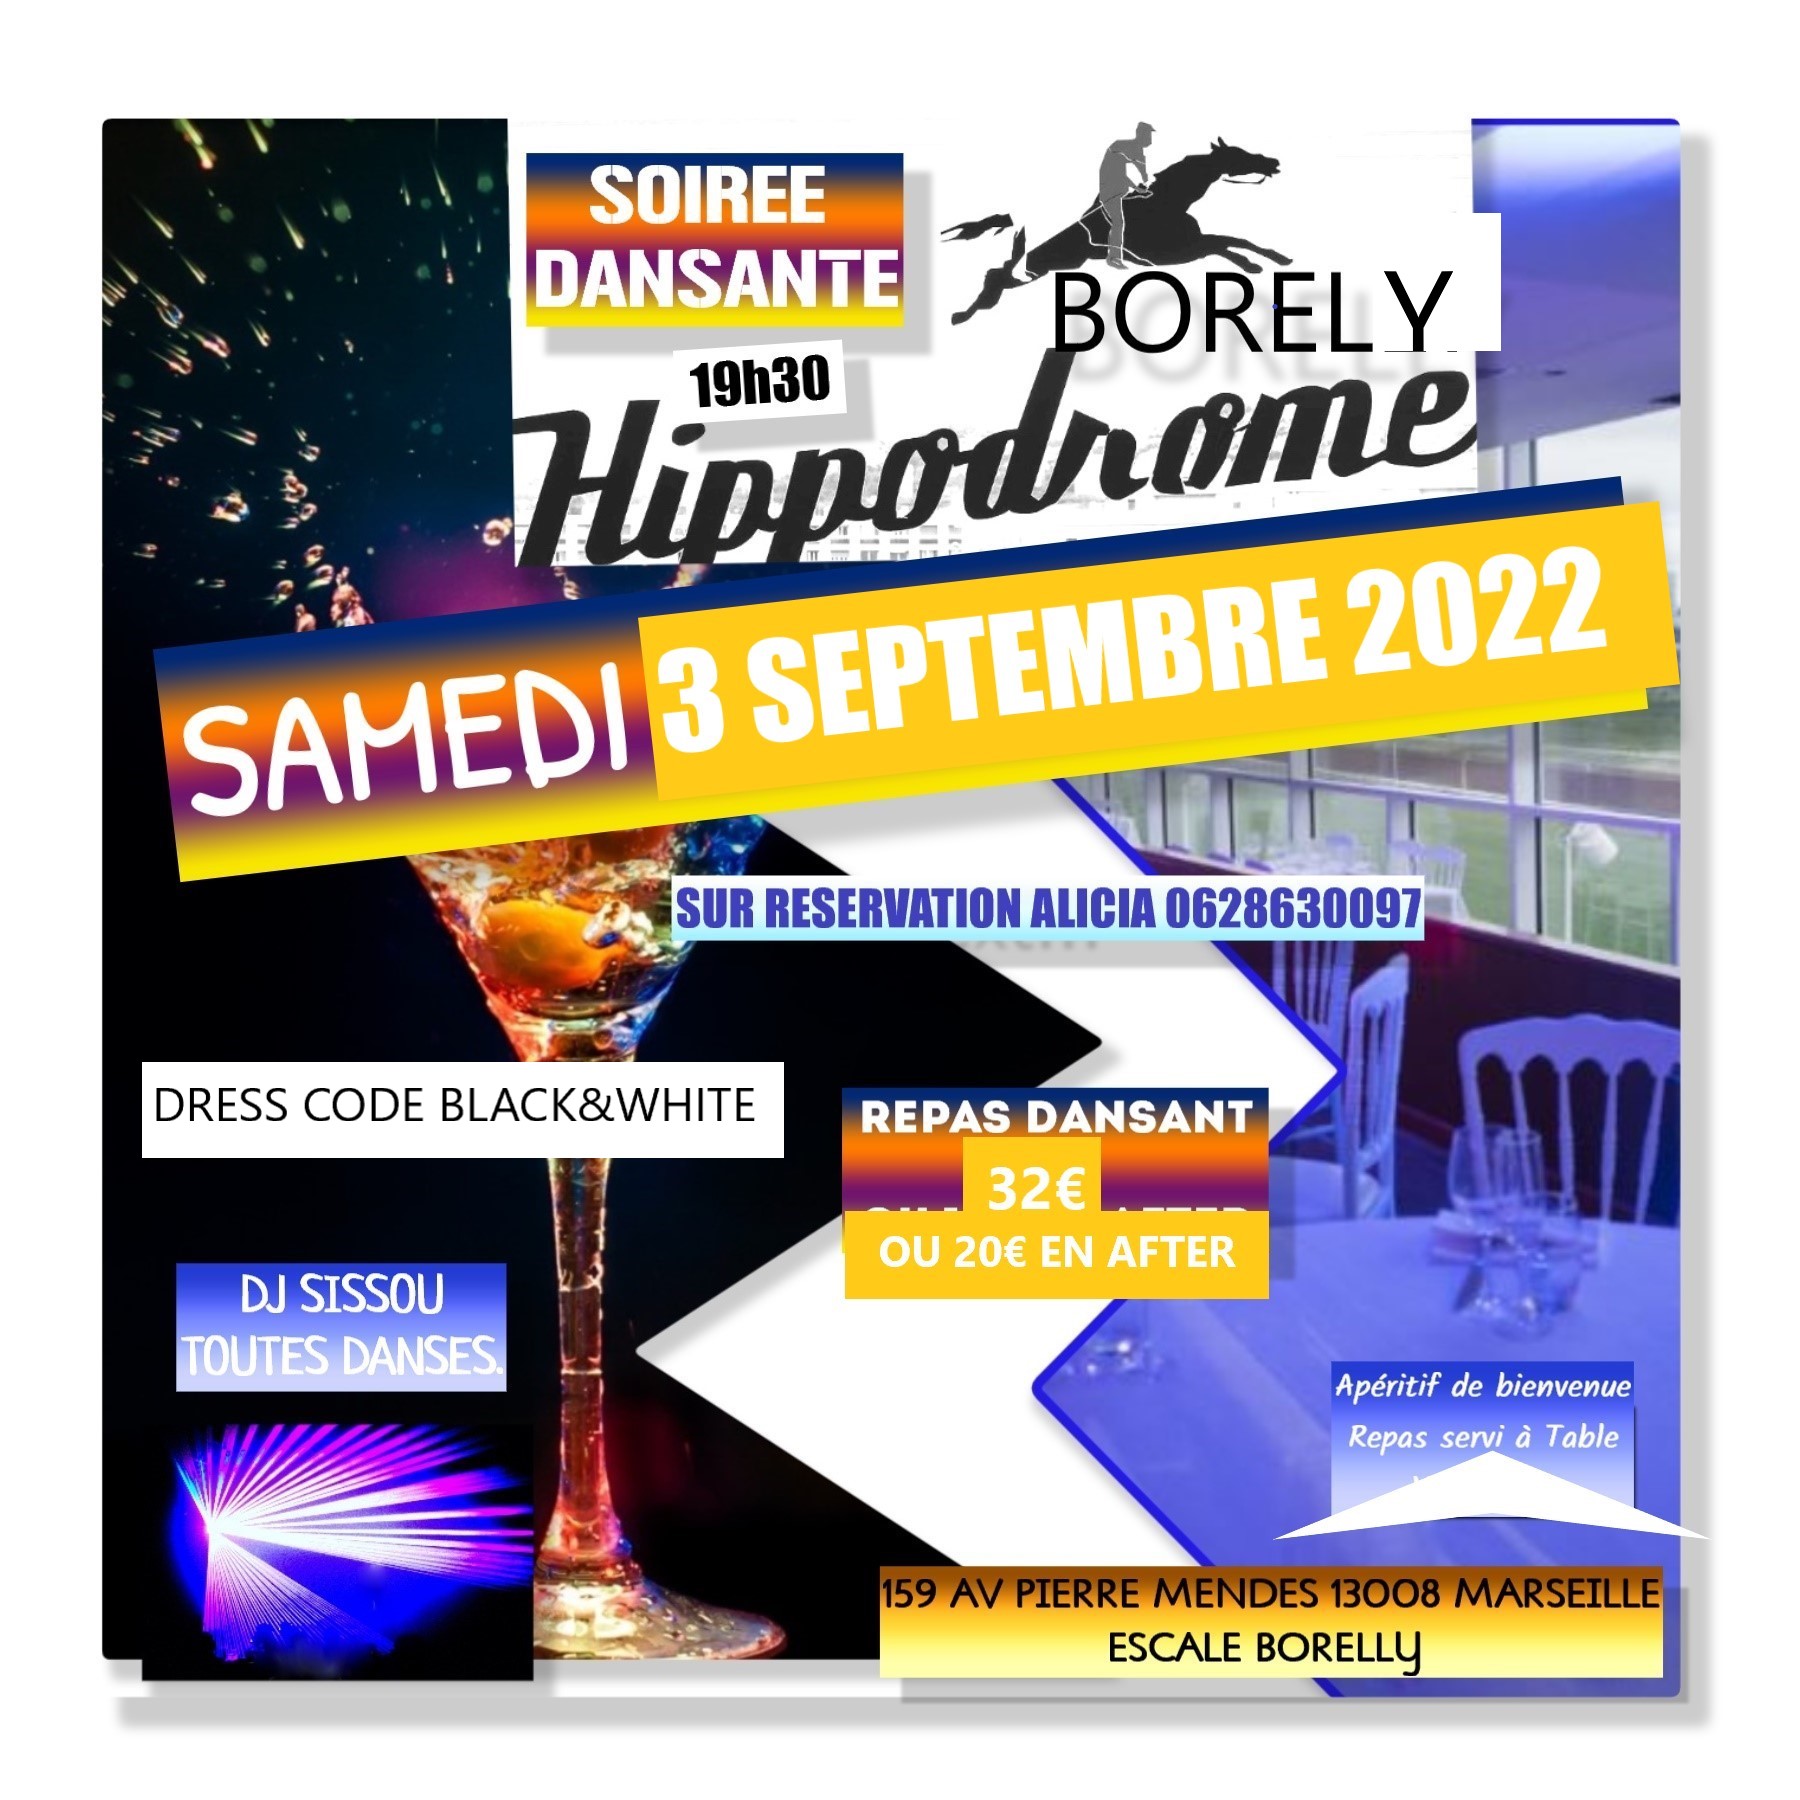 SOIREE 3 SEPTEMBRE 2022 BORELY BON